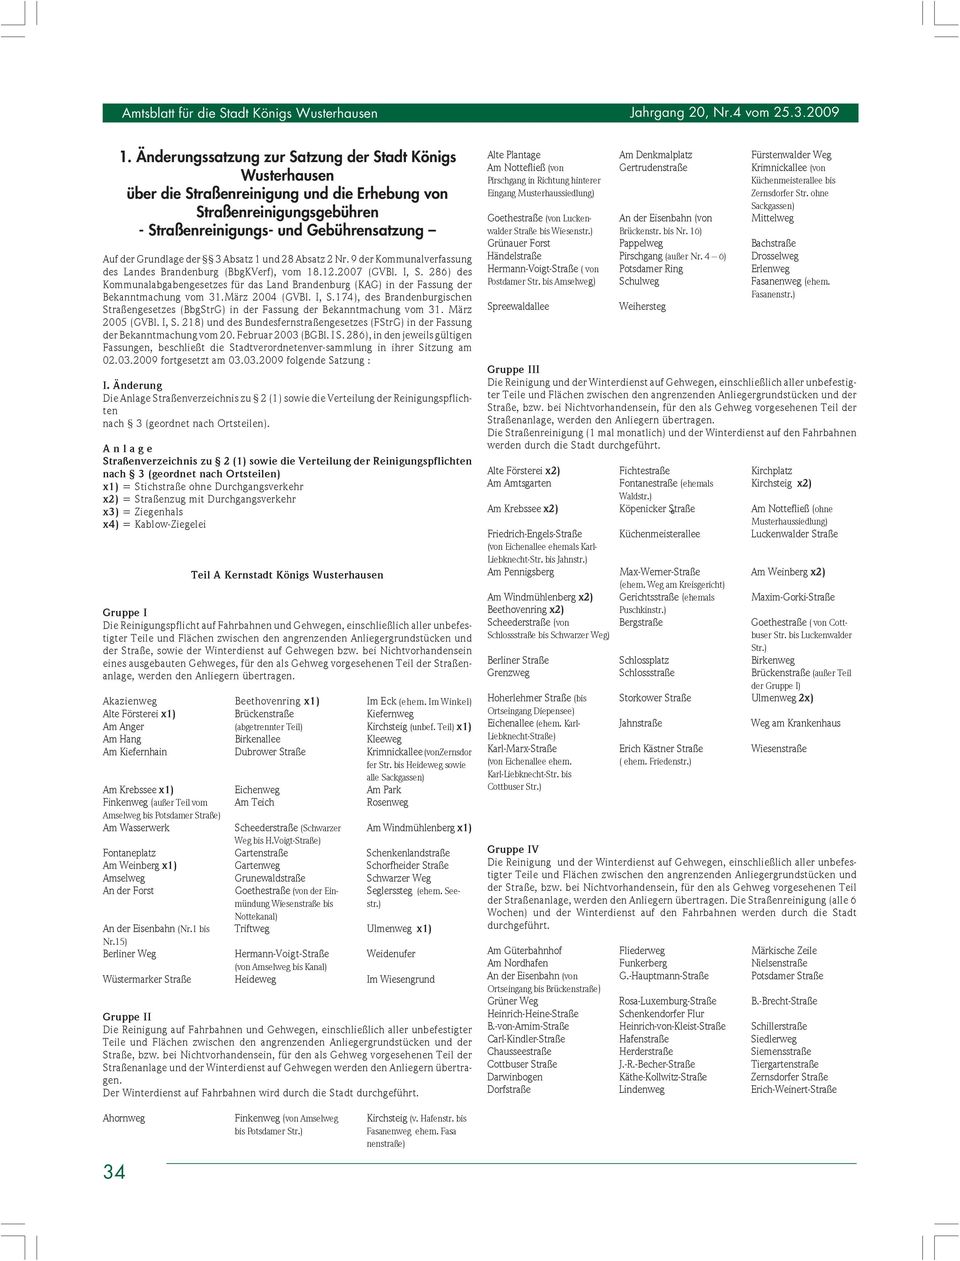 Absatz 1 und 28 Absatz 2 Nr. 9 der Kommunalverfassung des Landes Brandenburg (BbgKVerf), vom 18.12.2007 (GVBl. I, S.